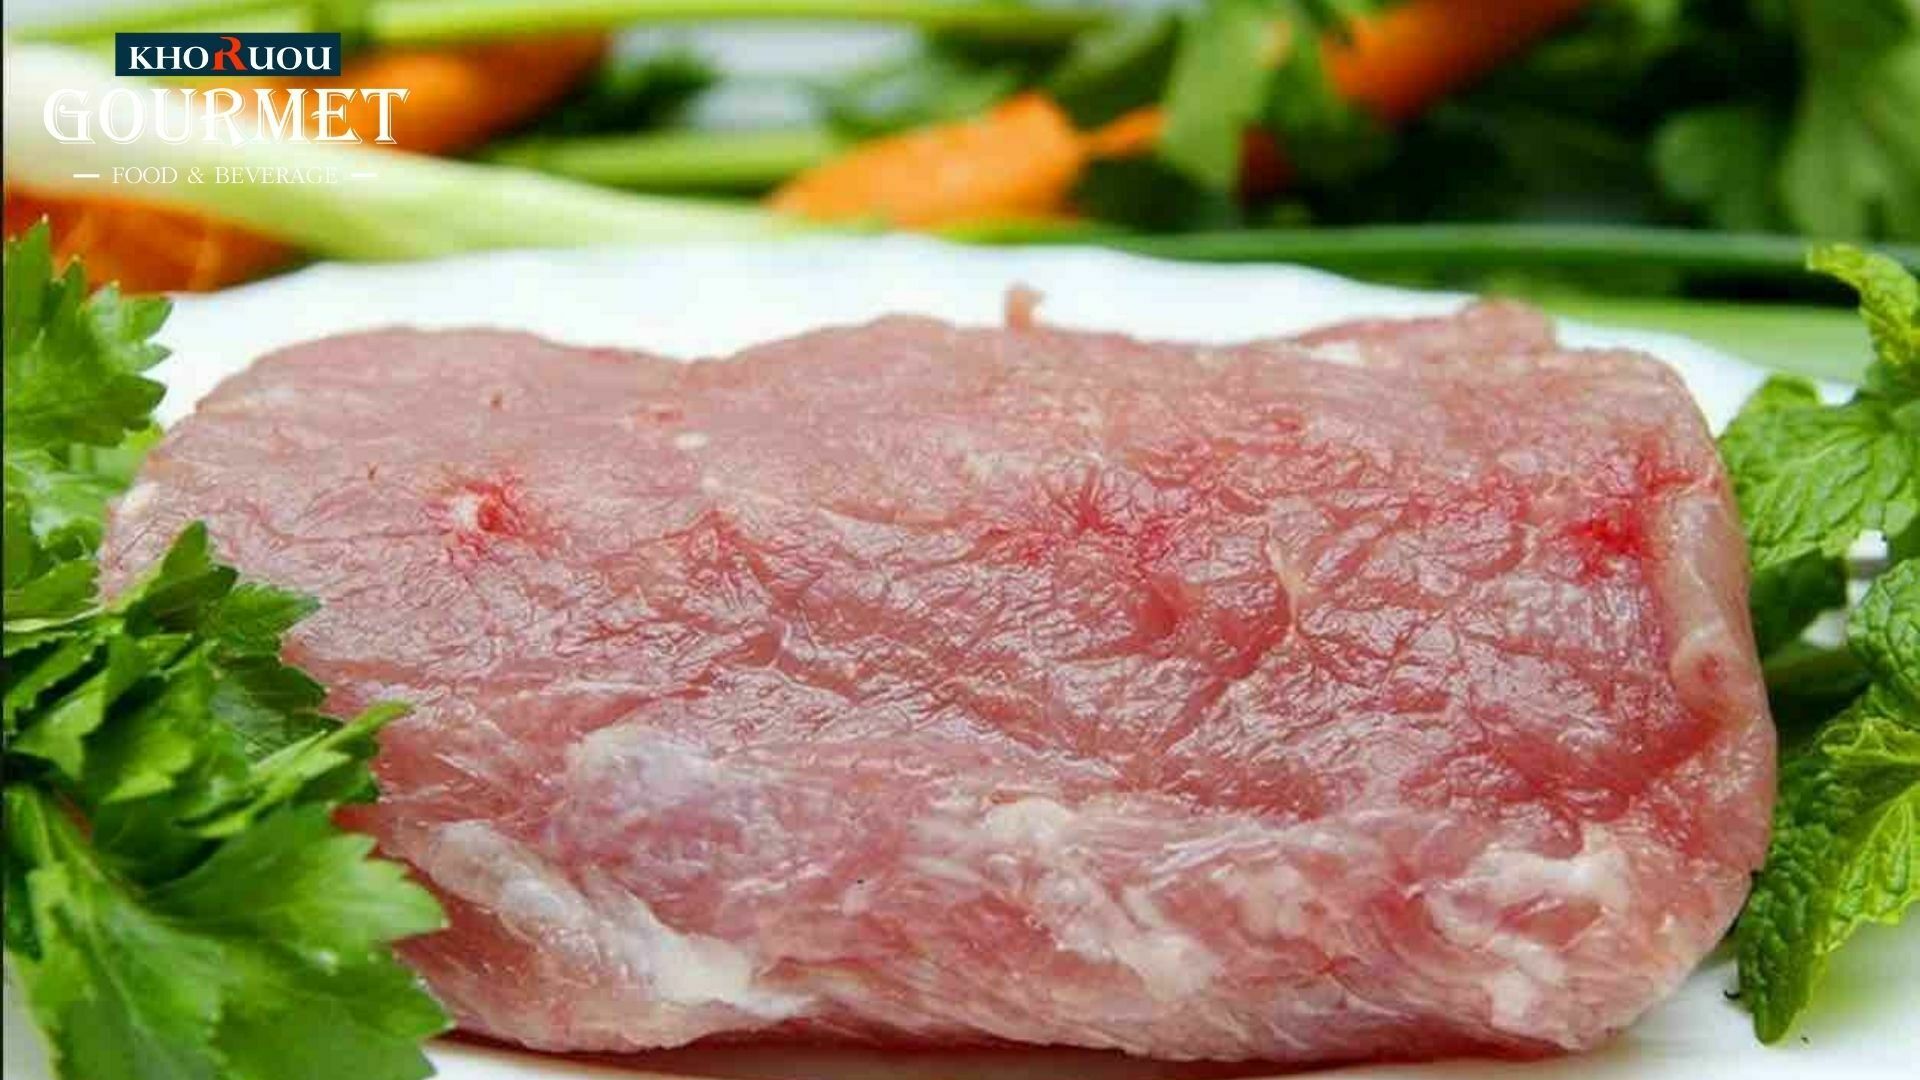 Thịt lợn sạch hữu cơ là gì, giữa thịt lợn thường và thịt lợn organic có điểm gì khác biệt, khác biệt như thế nào? Để tìm lời giải đáp cho những thắc mắc trên. Hãy cùng Khoruou Gourmet tham khảo bài viết sau đây ngay nhé!